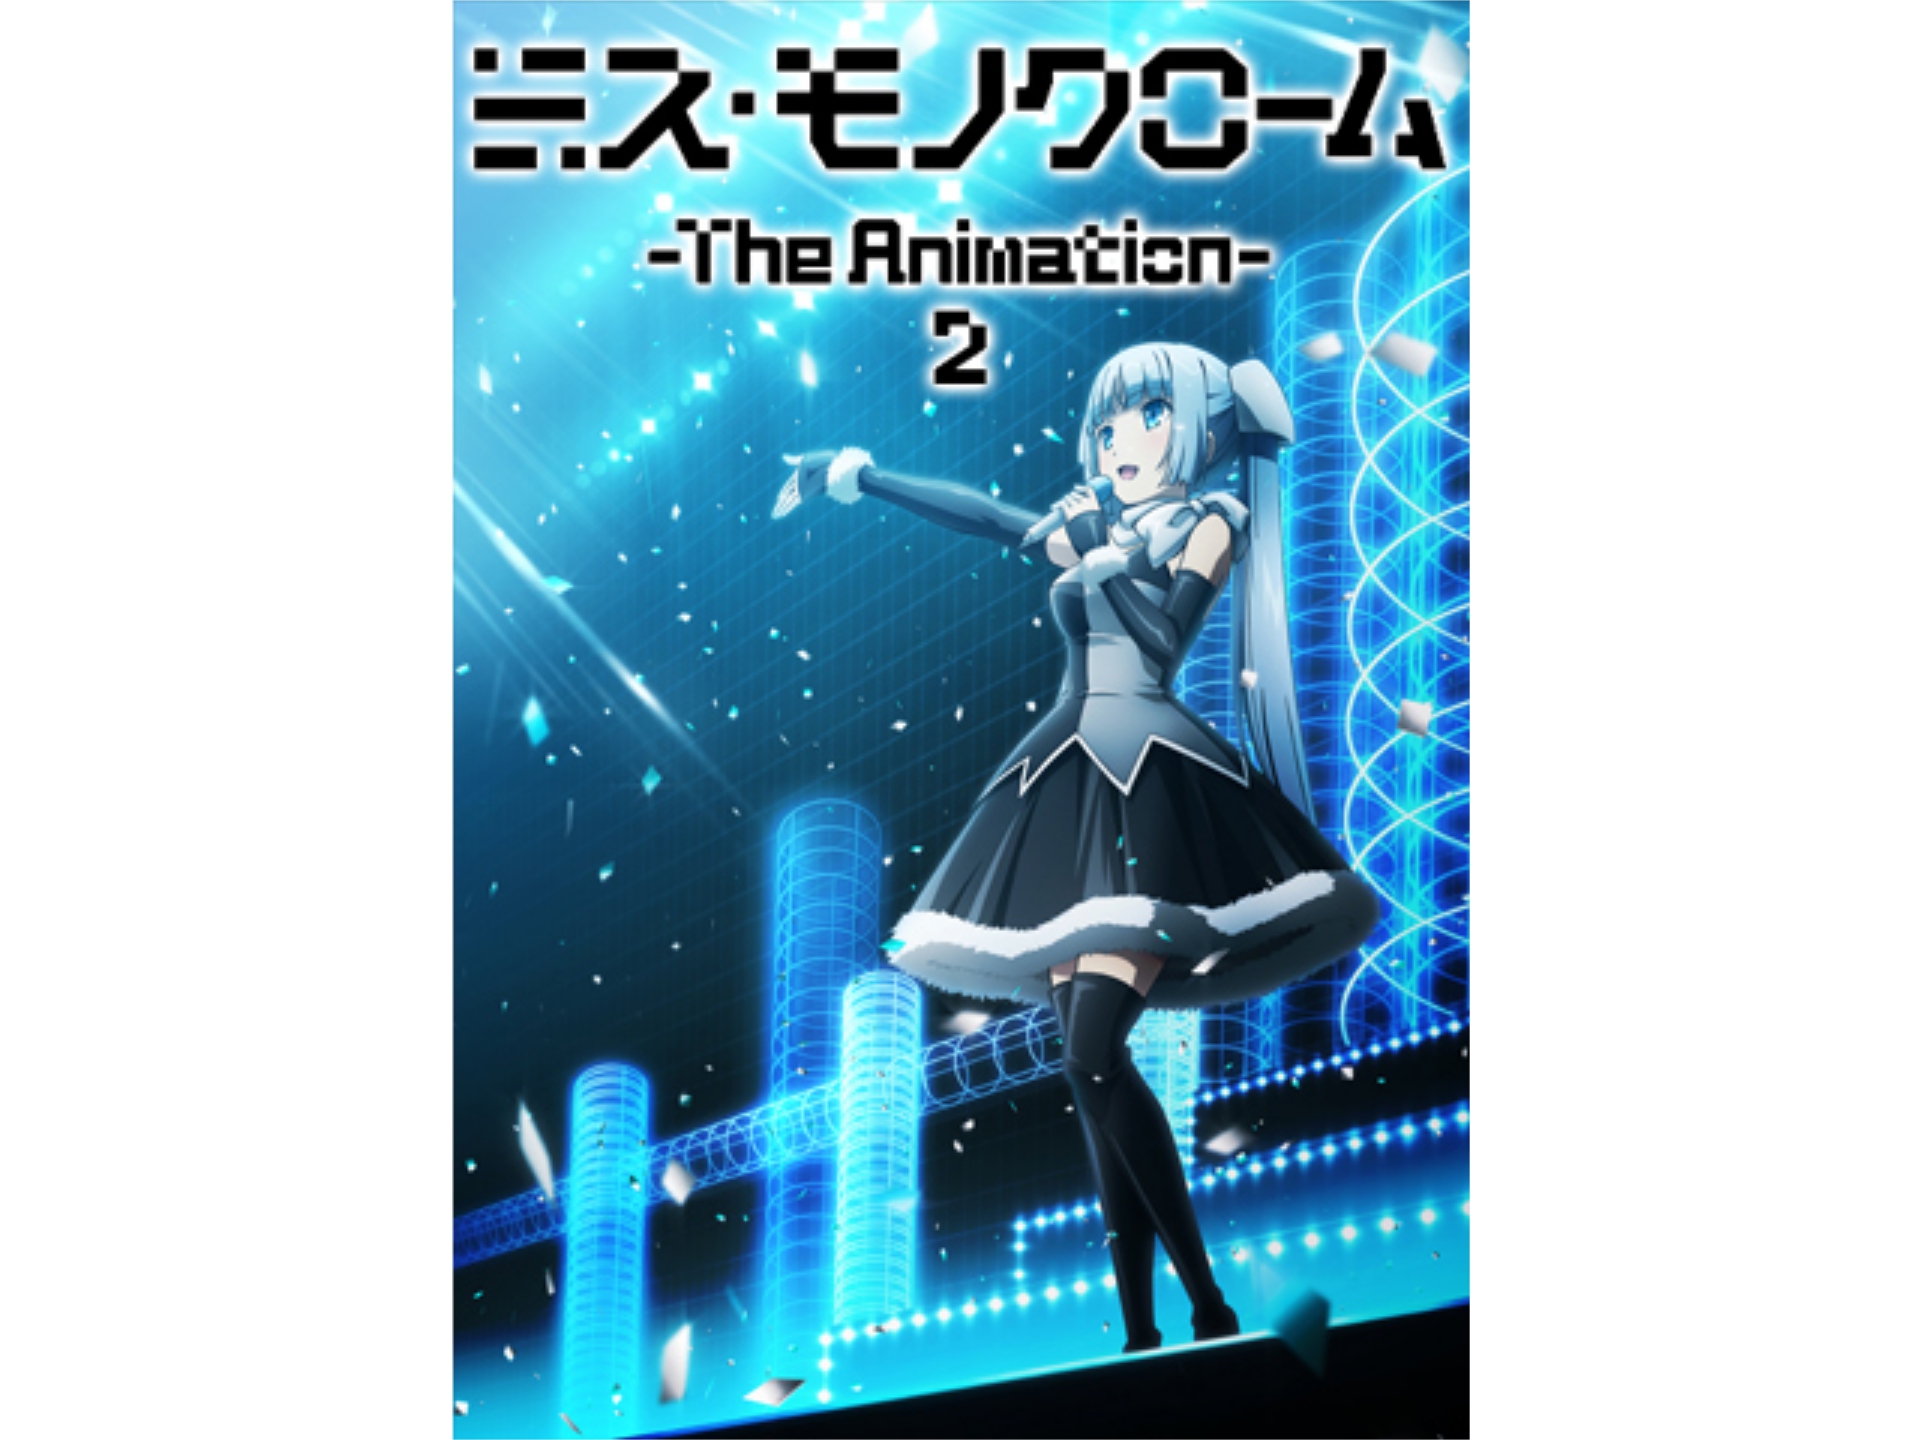 アニメ ミス モノクローム The Animation 2 01 Reignition フル動画 初月無料 動画配信サービスのビデオマーケット